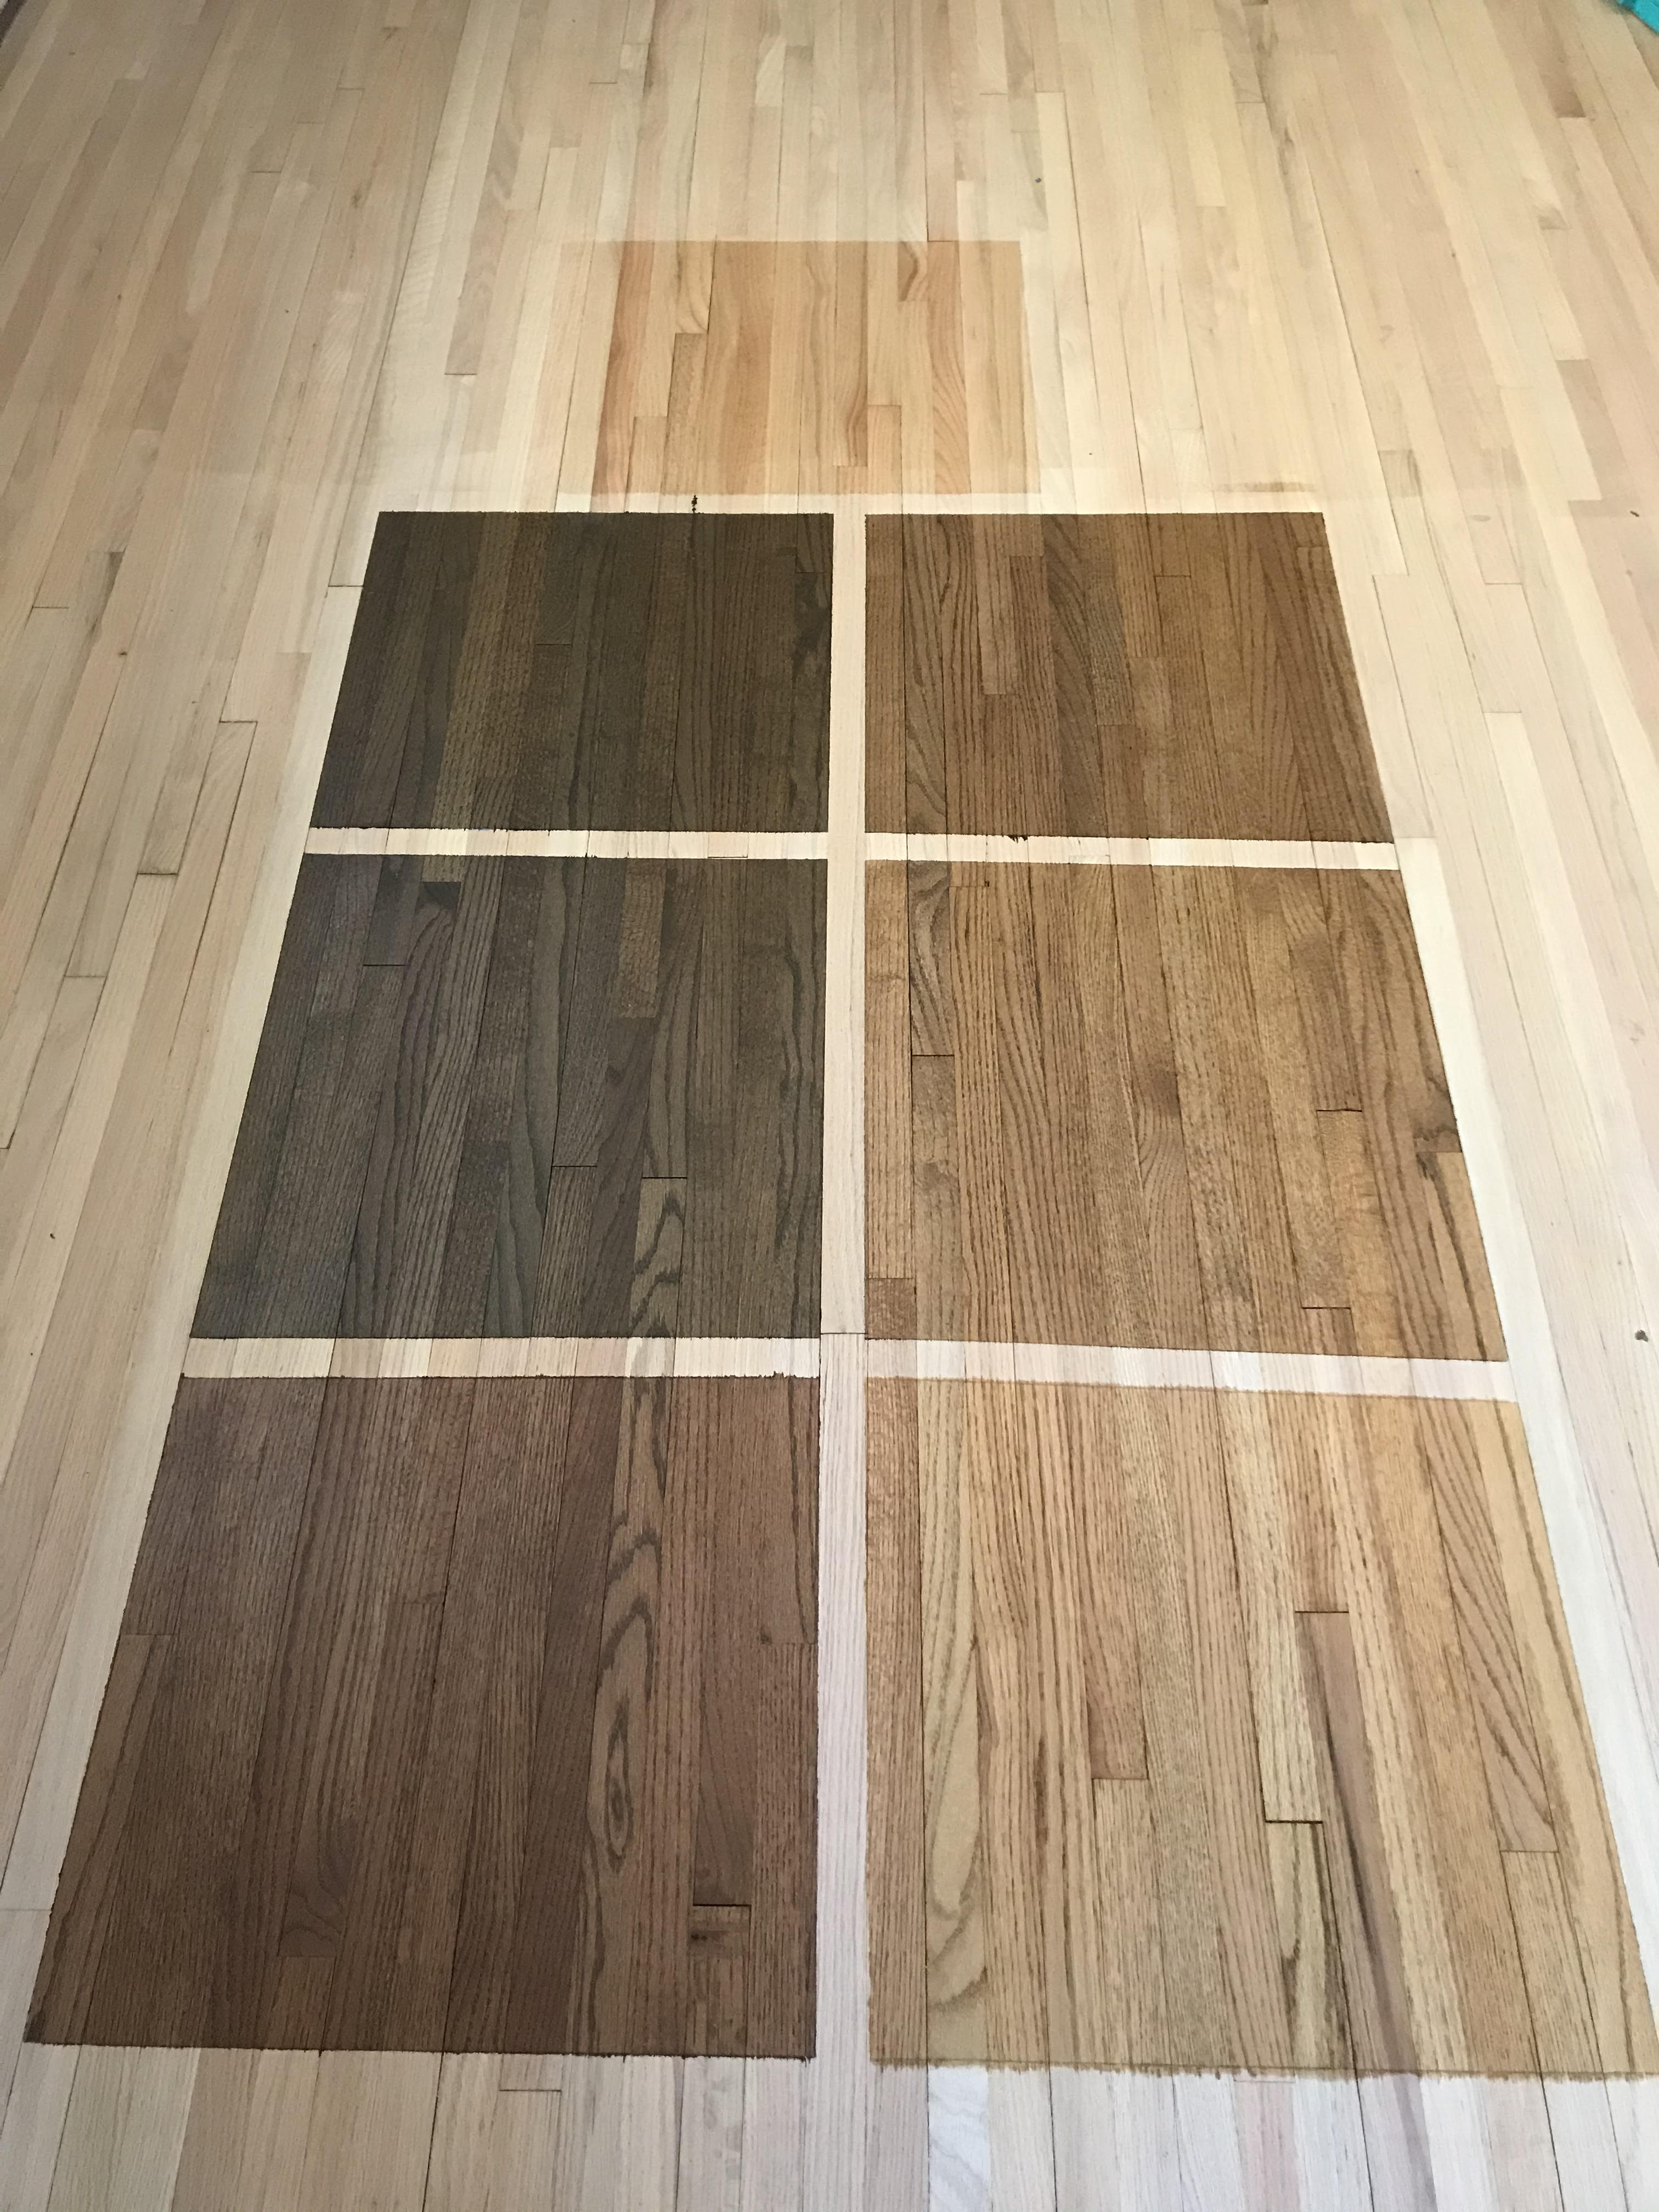 Hardwood Floor Refinishing | UB Hardwoods - Plymouth, MN